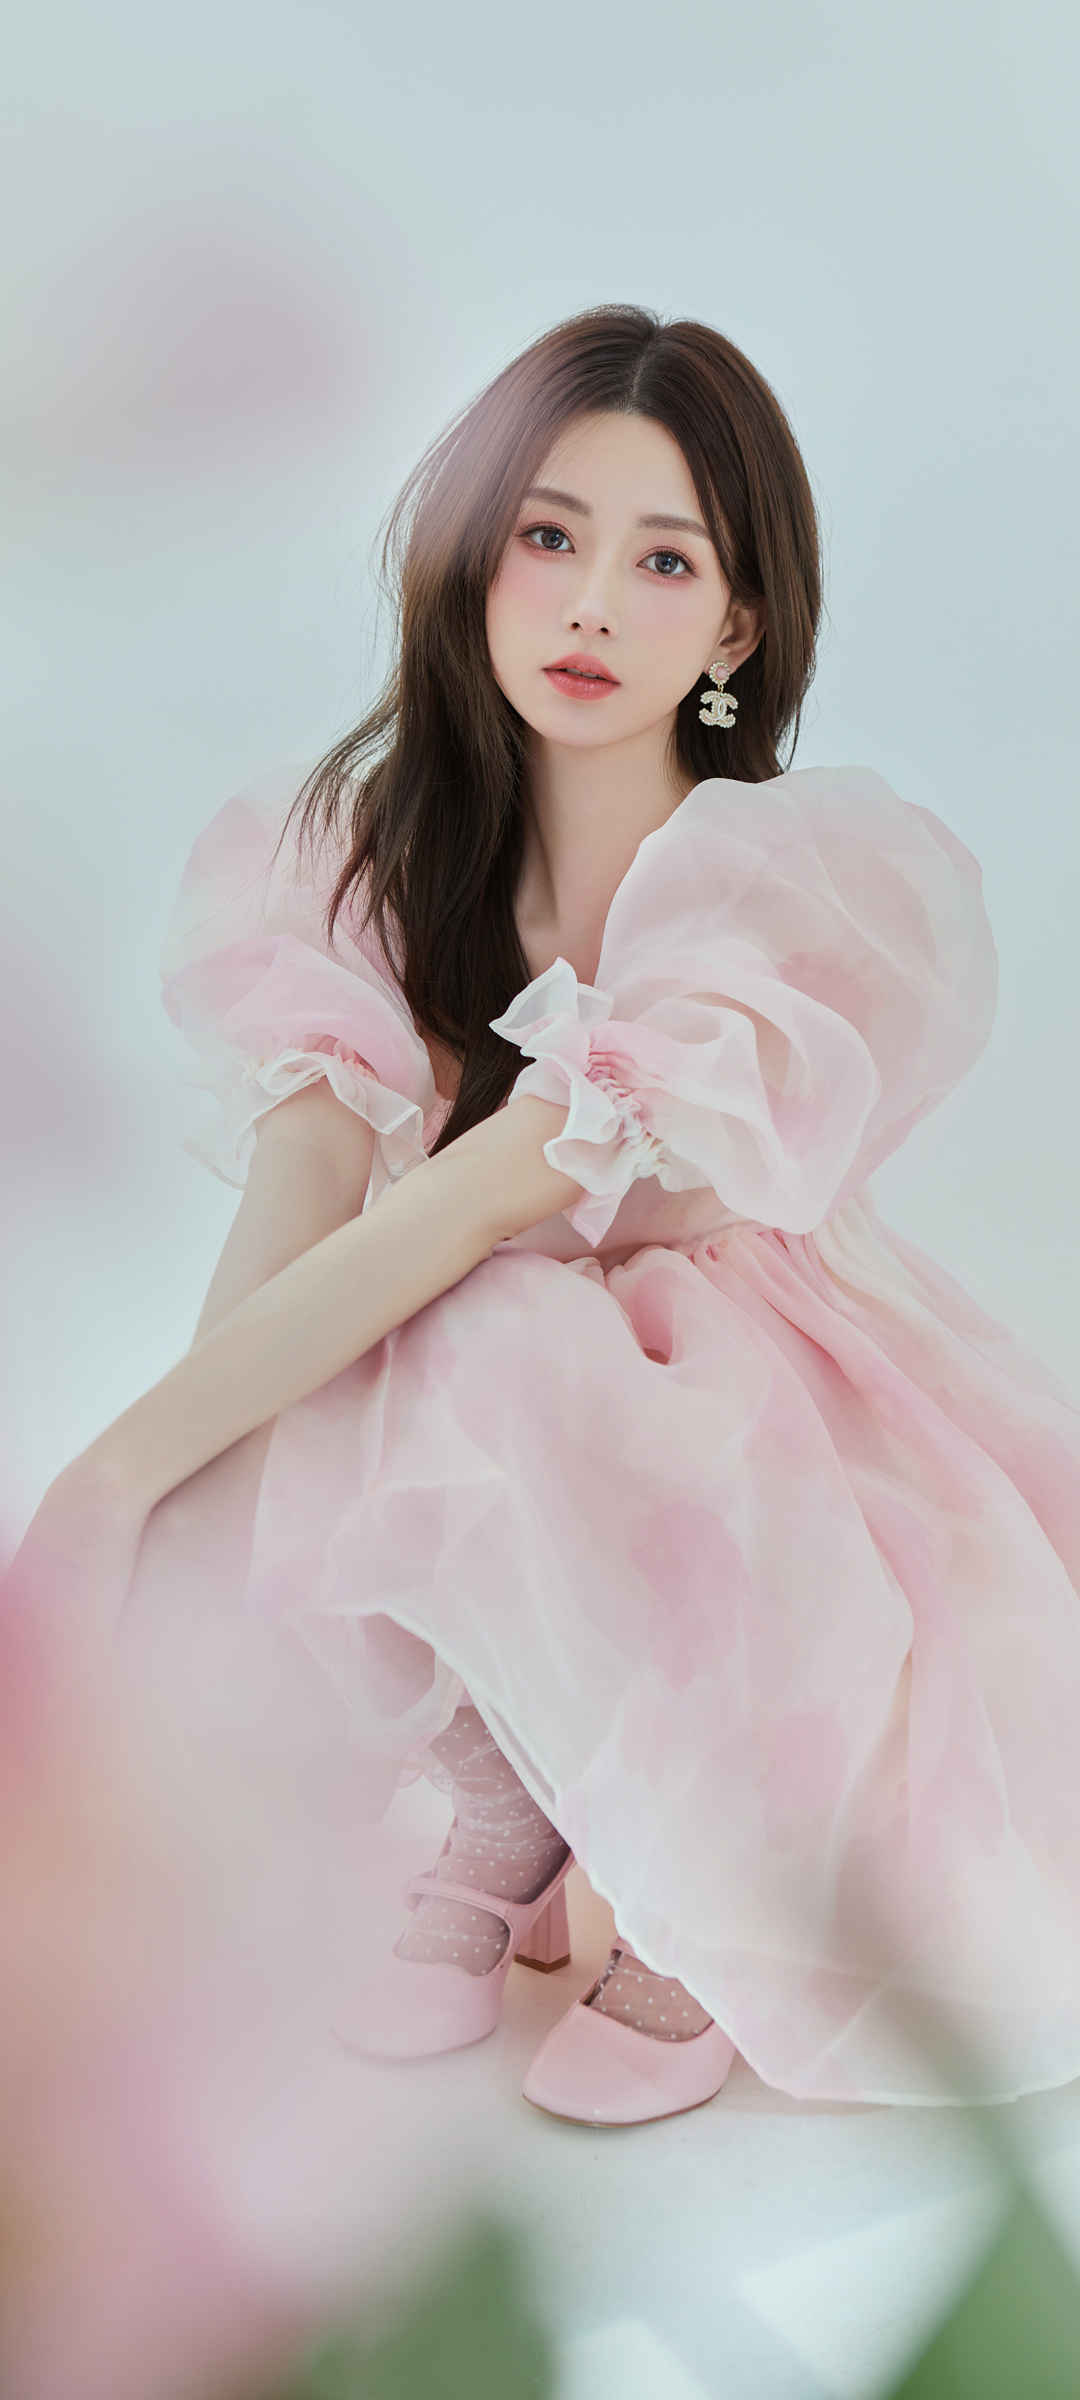 粉色裙子公主美女壁纸图片